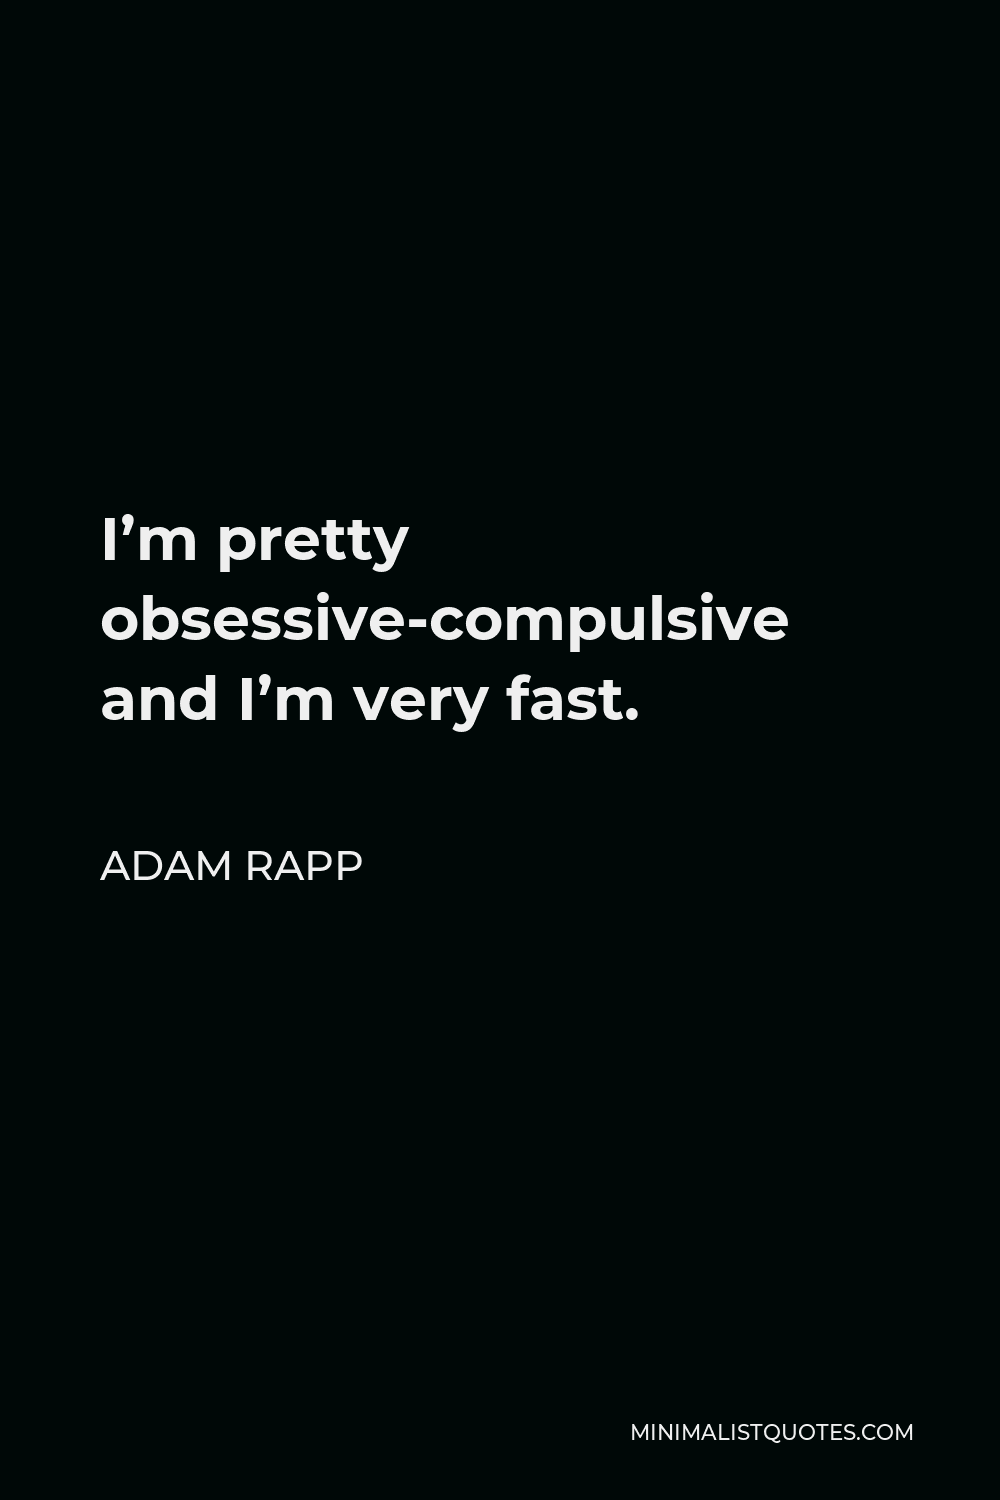 Adam Rapp Quote - I’m pretty obsessive-compulsive and I’m very fast.